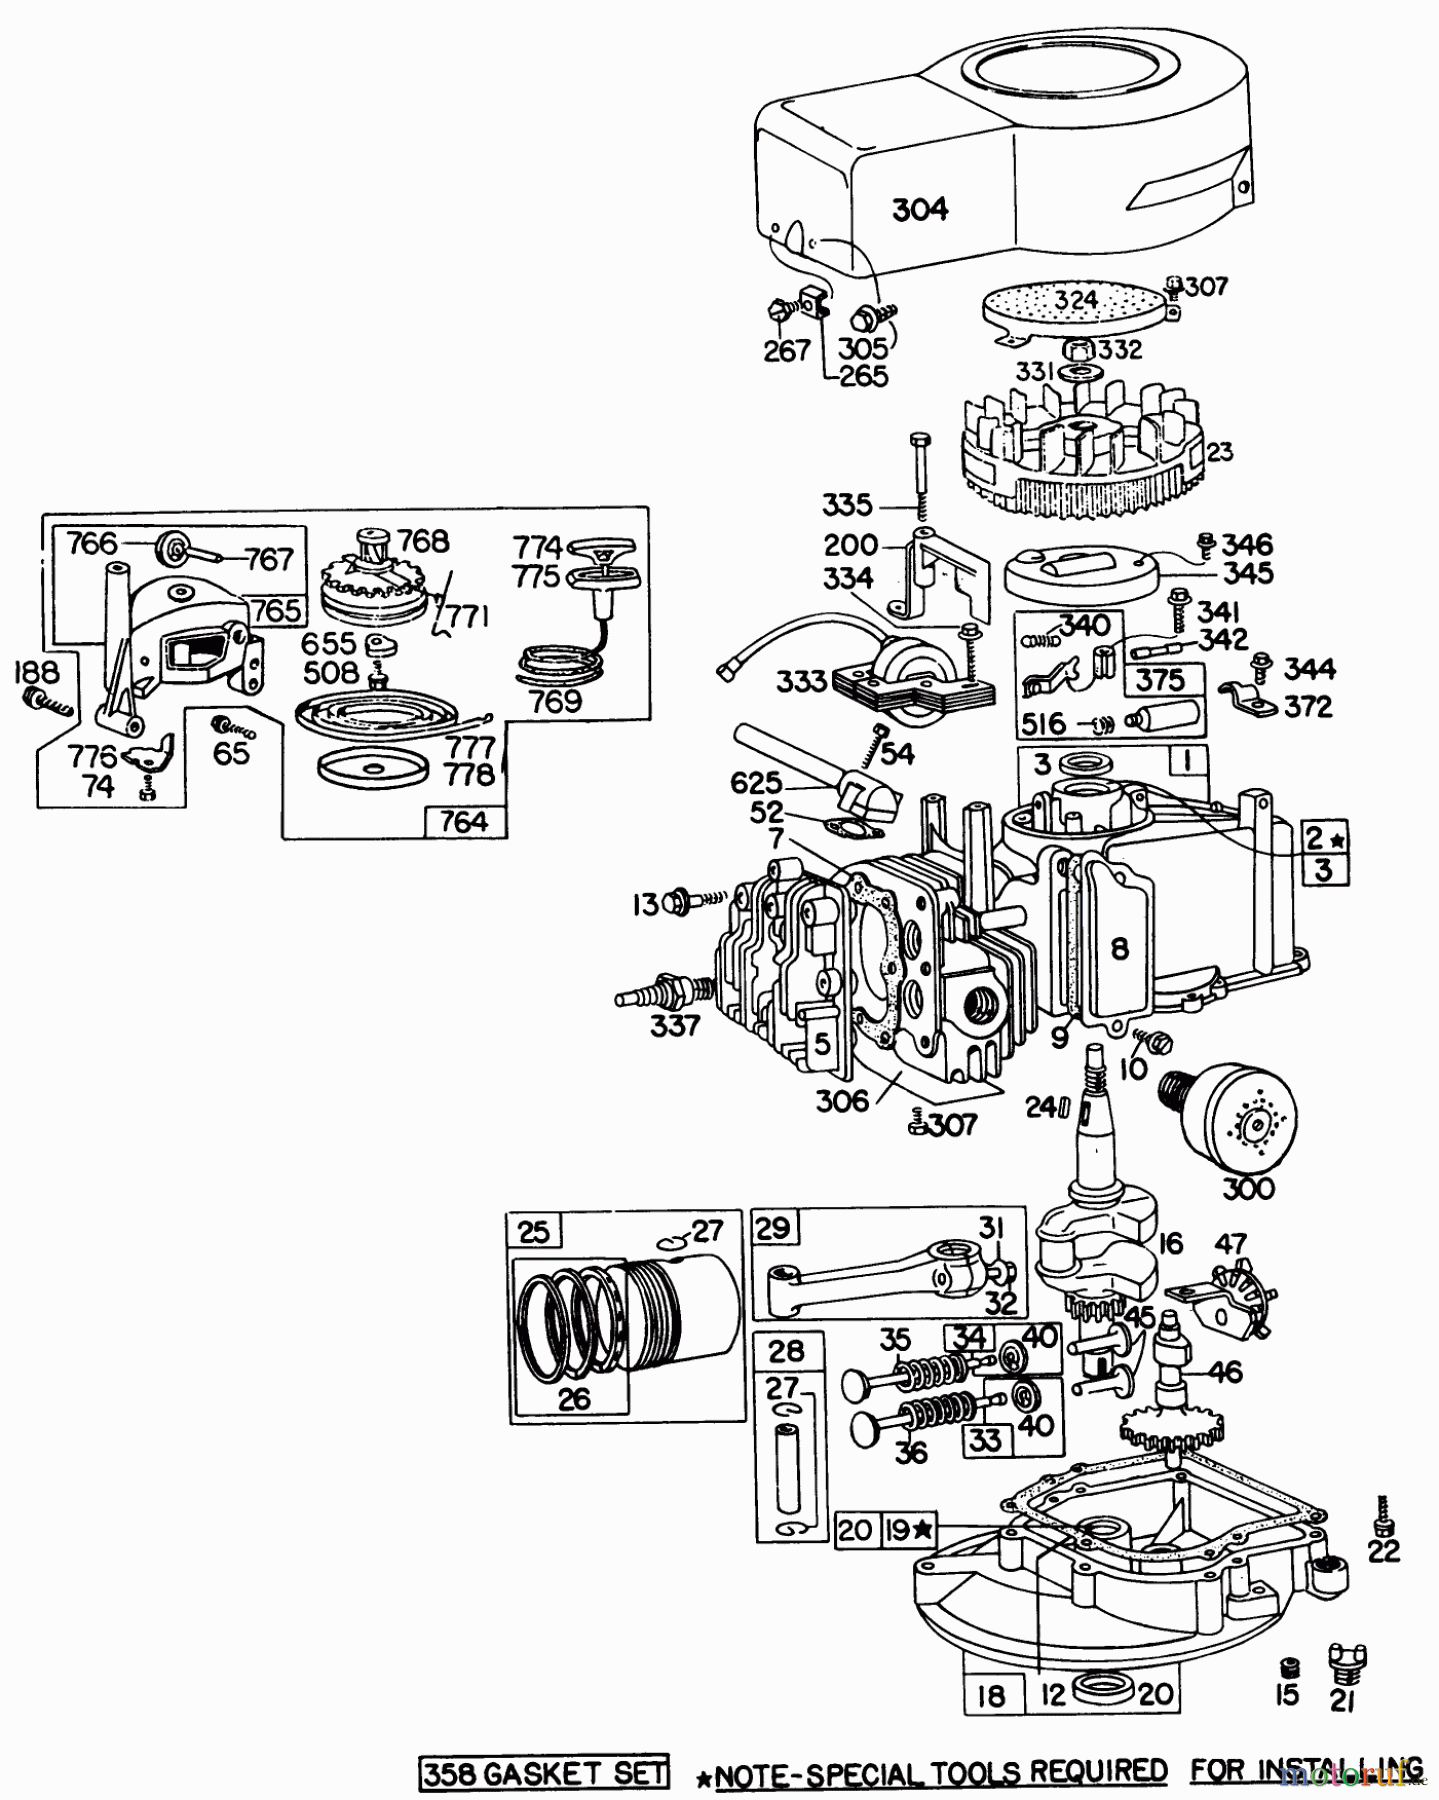  Toro Neu Mowers, Walk-Behind Seite 1 16264 - Toro Whirlwind II Lawnmower, 1977 (7000001-7999999) ENGINE BRIGGS & STRATTON MODEL 92908-1743-01 FOR 21